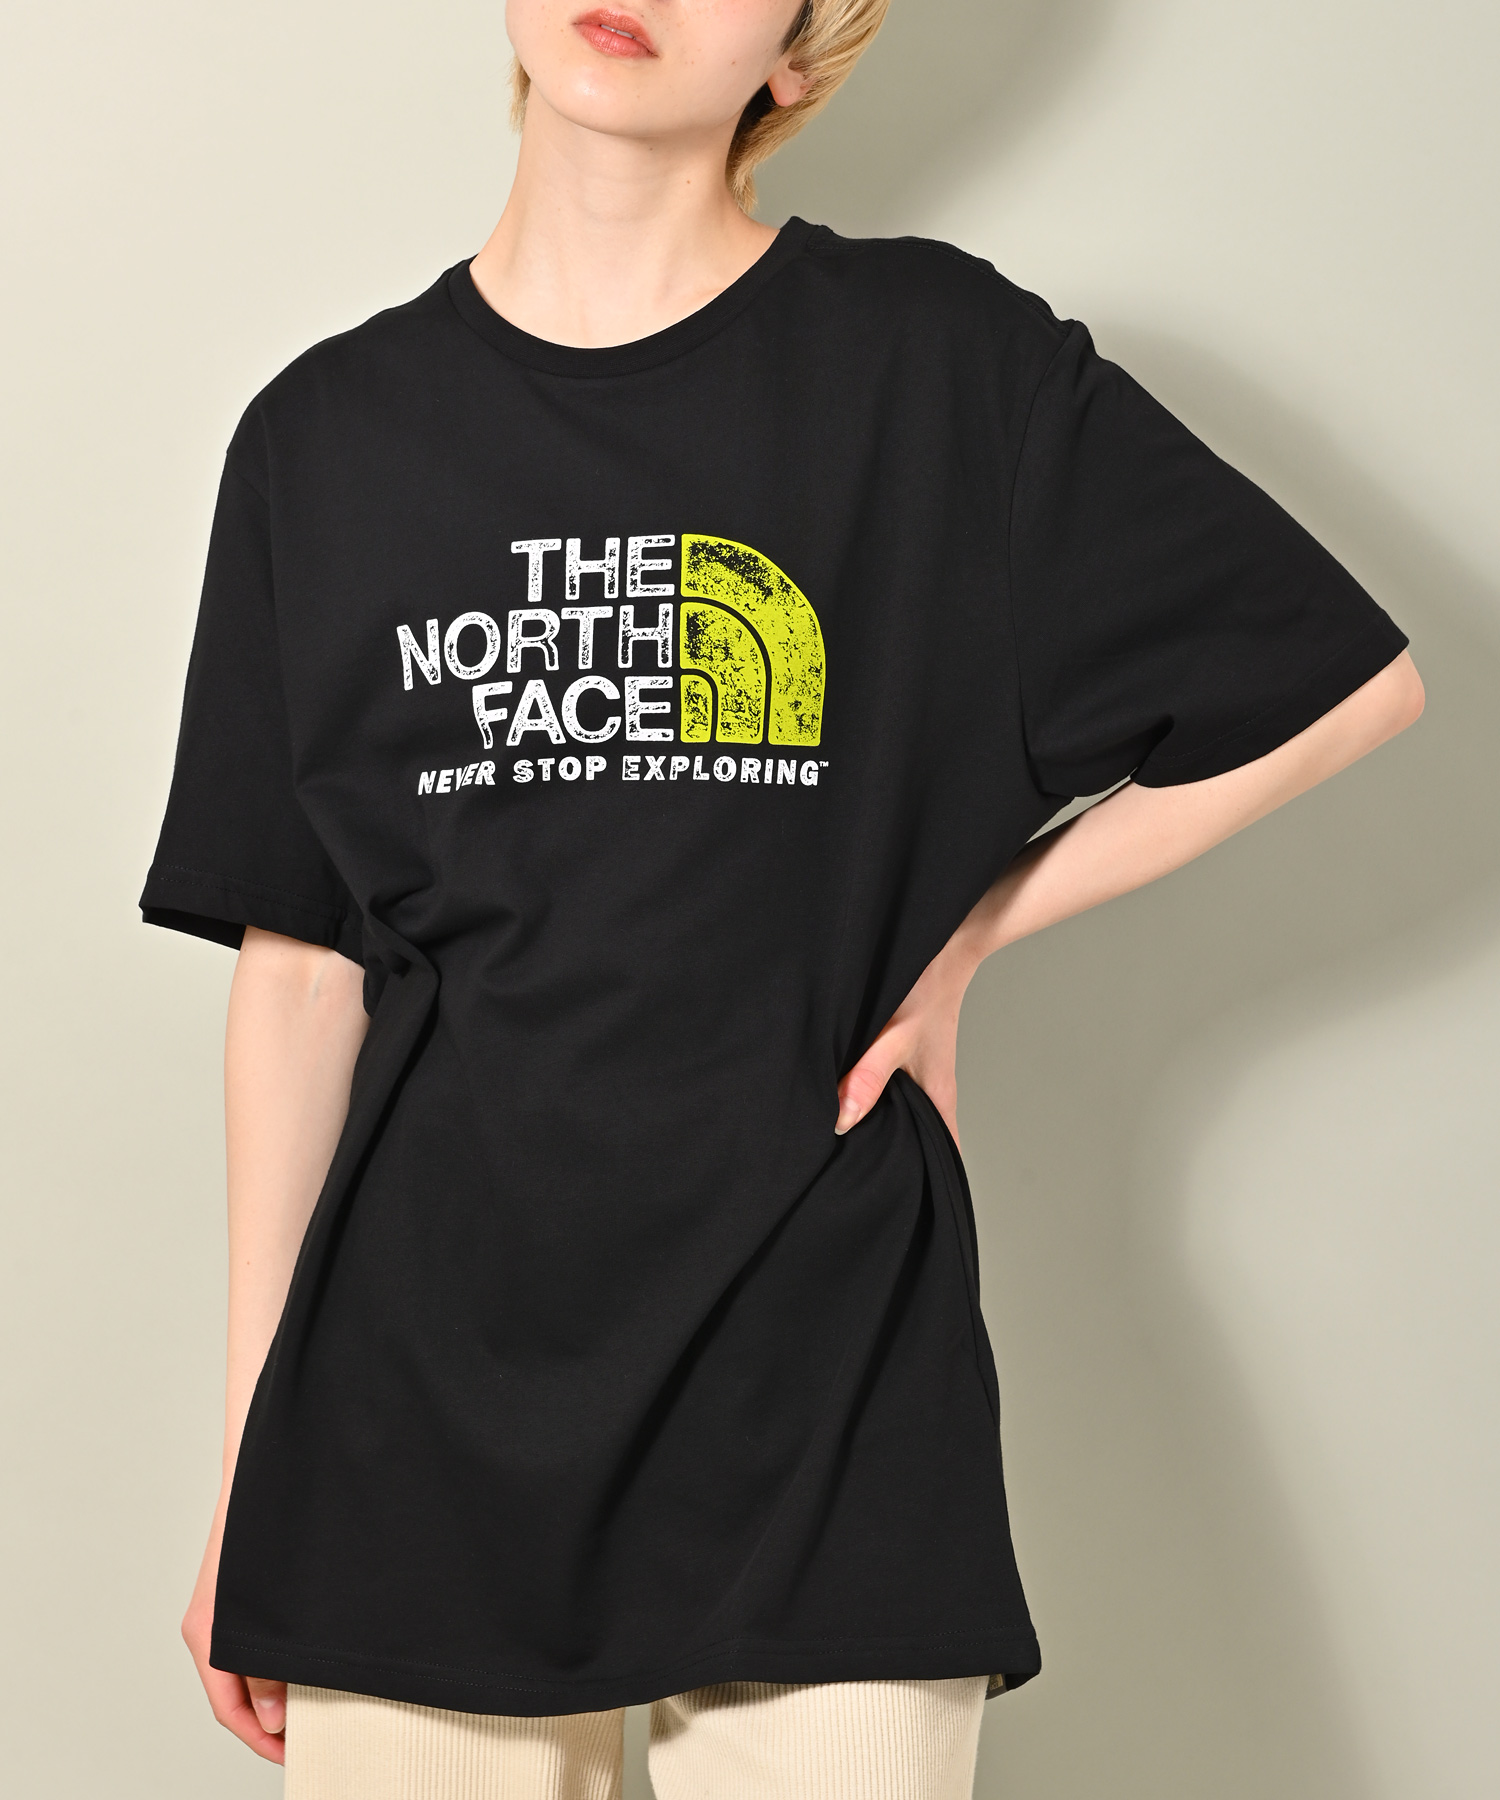 THE NORTH FACE ノースフェイス RUST 2 TEE 半袖Tシャツ(503197490 